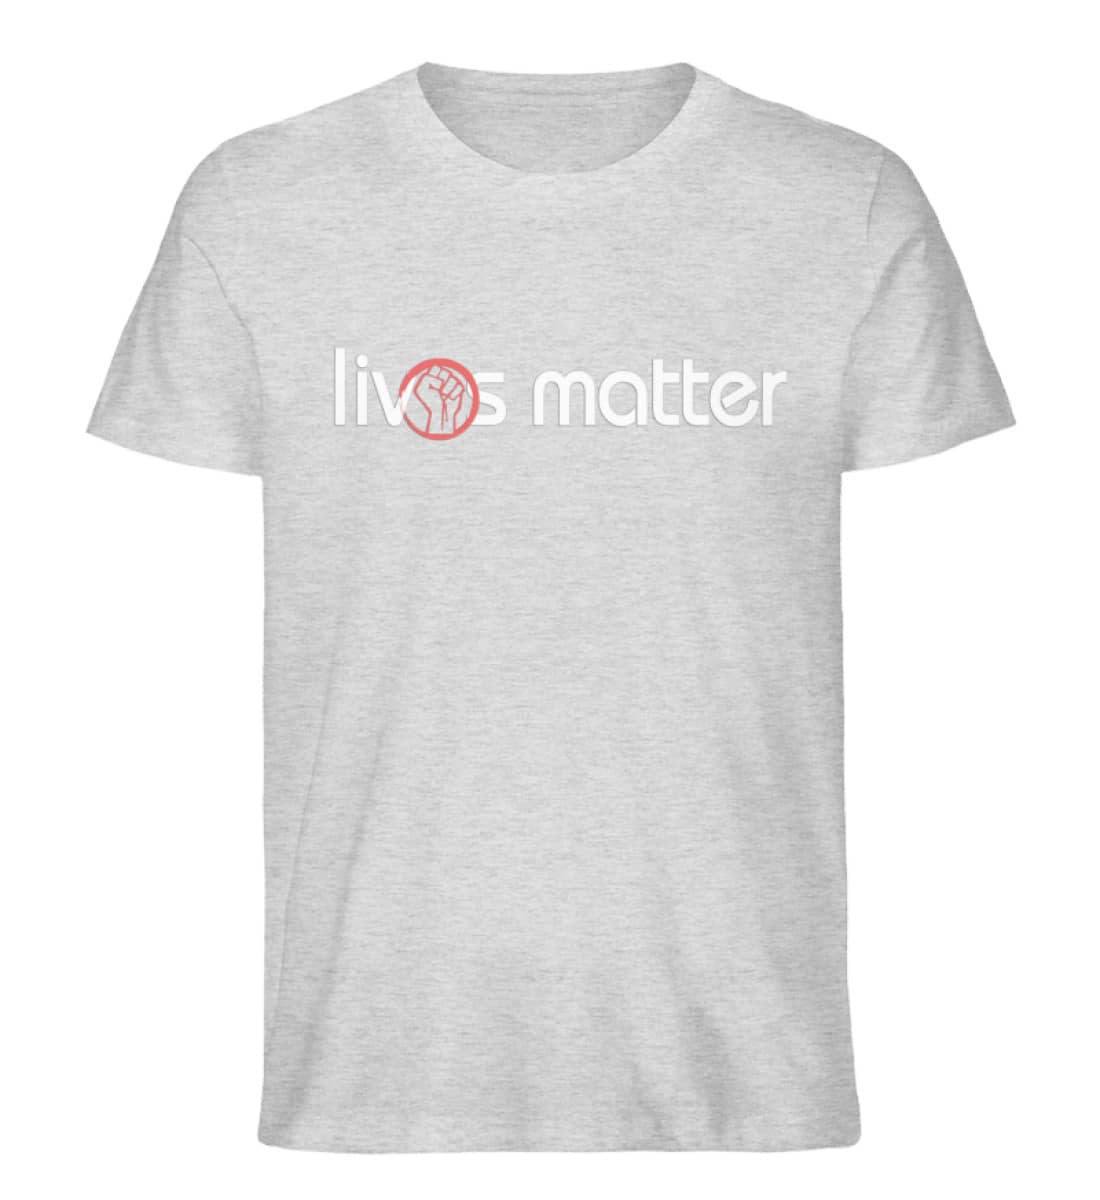 Lives Matter - Schriftzug in weiß - Herren Organic Melange Shirt-6892